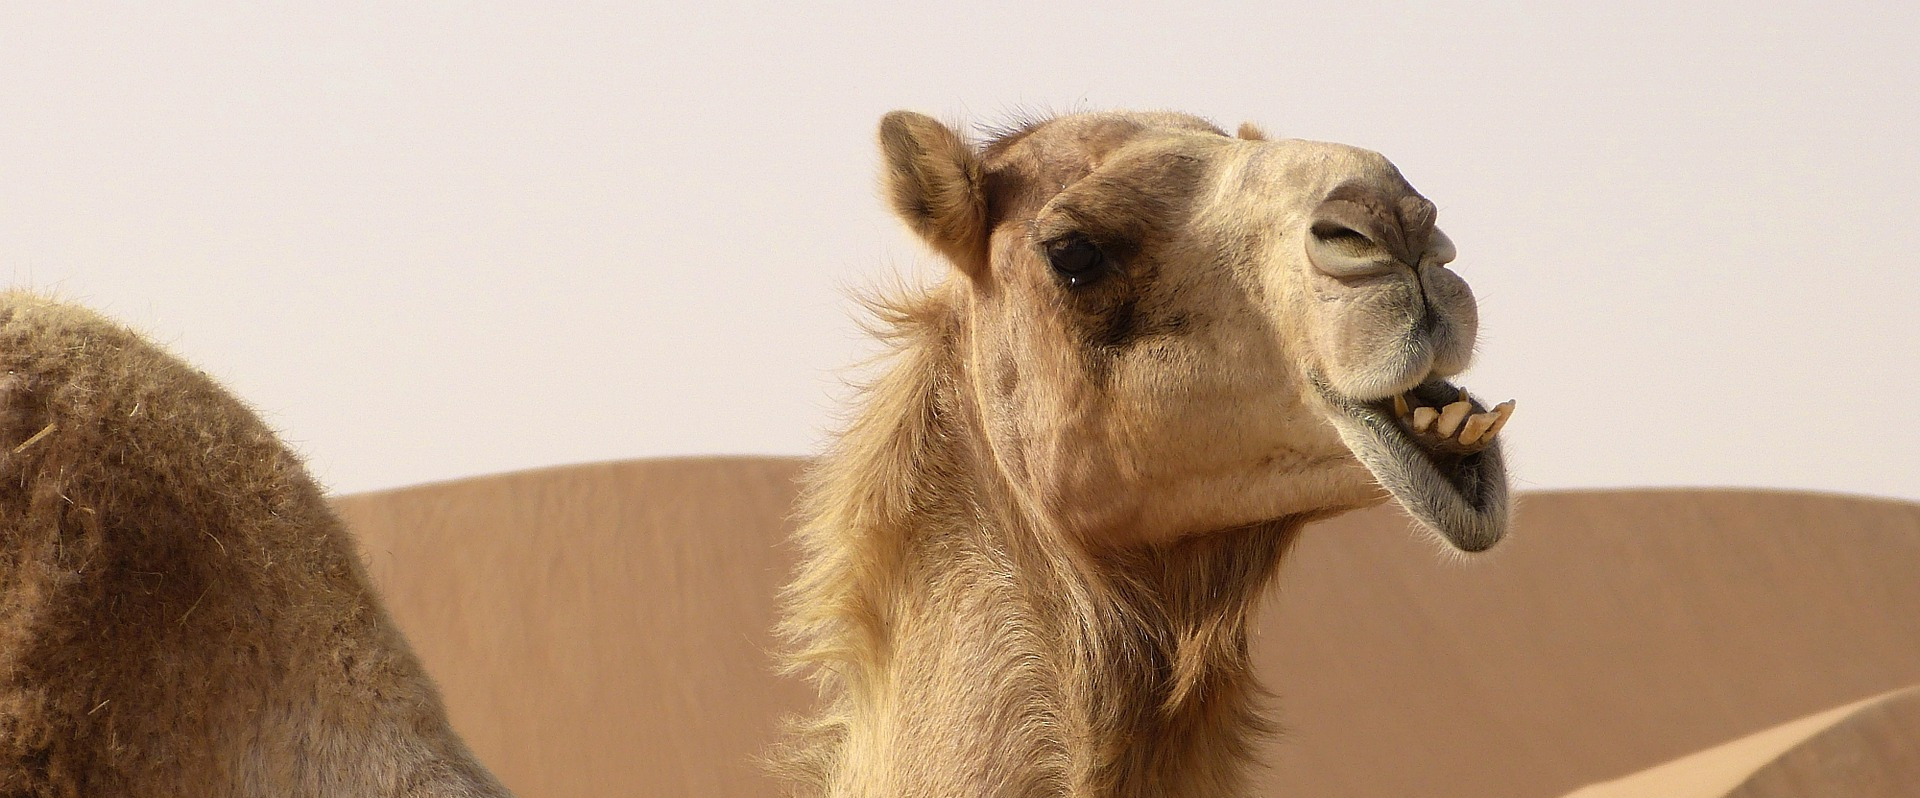 Quelle différence entre un chameau et un dromadaire ? © mariefrance, Pixabay